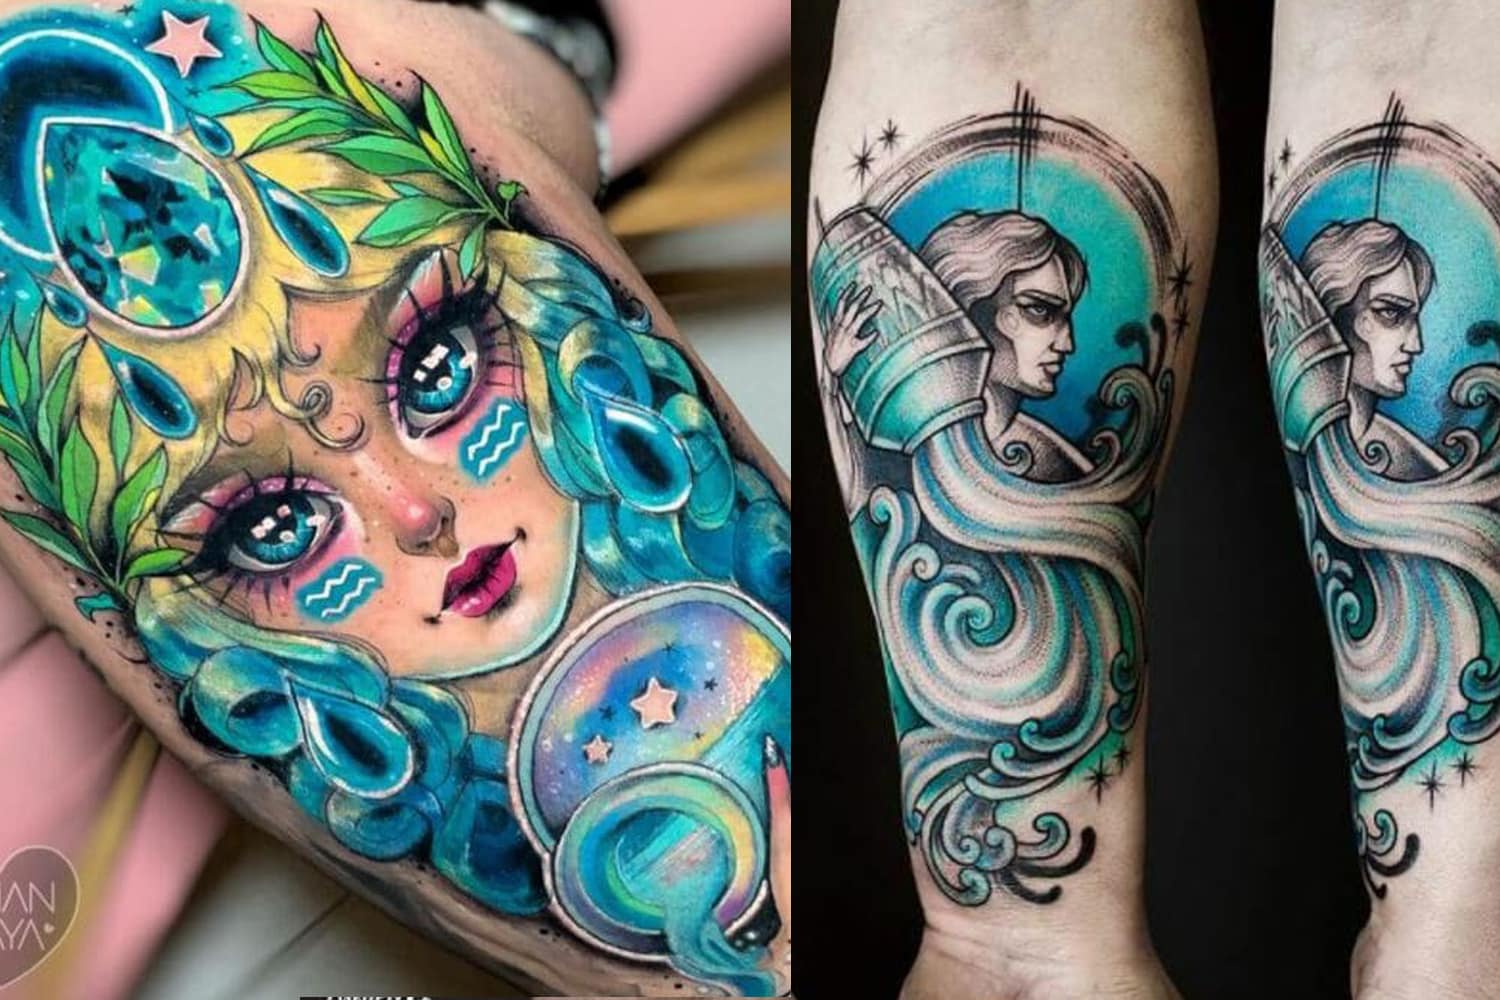 Aquarius Horoscope Flower Tattoo Tattoo Design and Tattoo Stencil/template  Instant Digital Download Tattoo Permit - Etsy